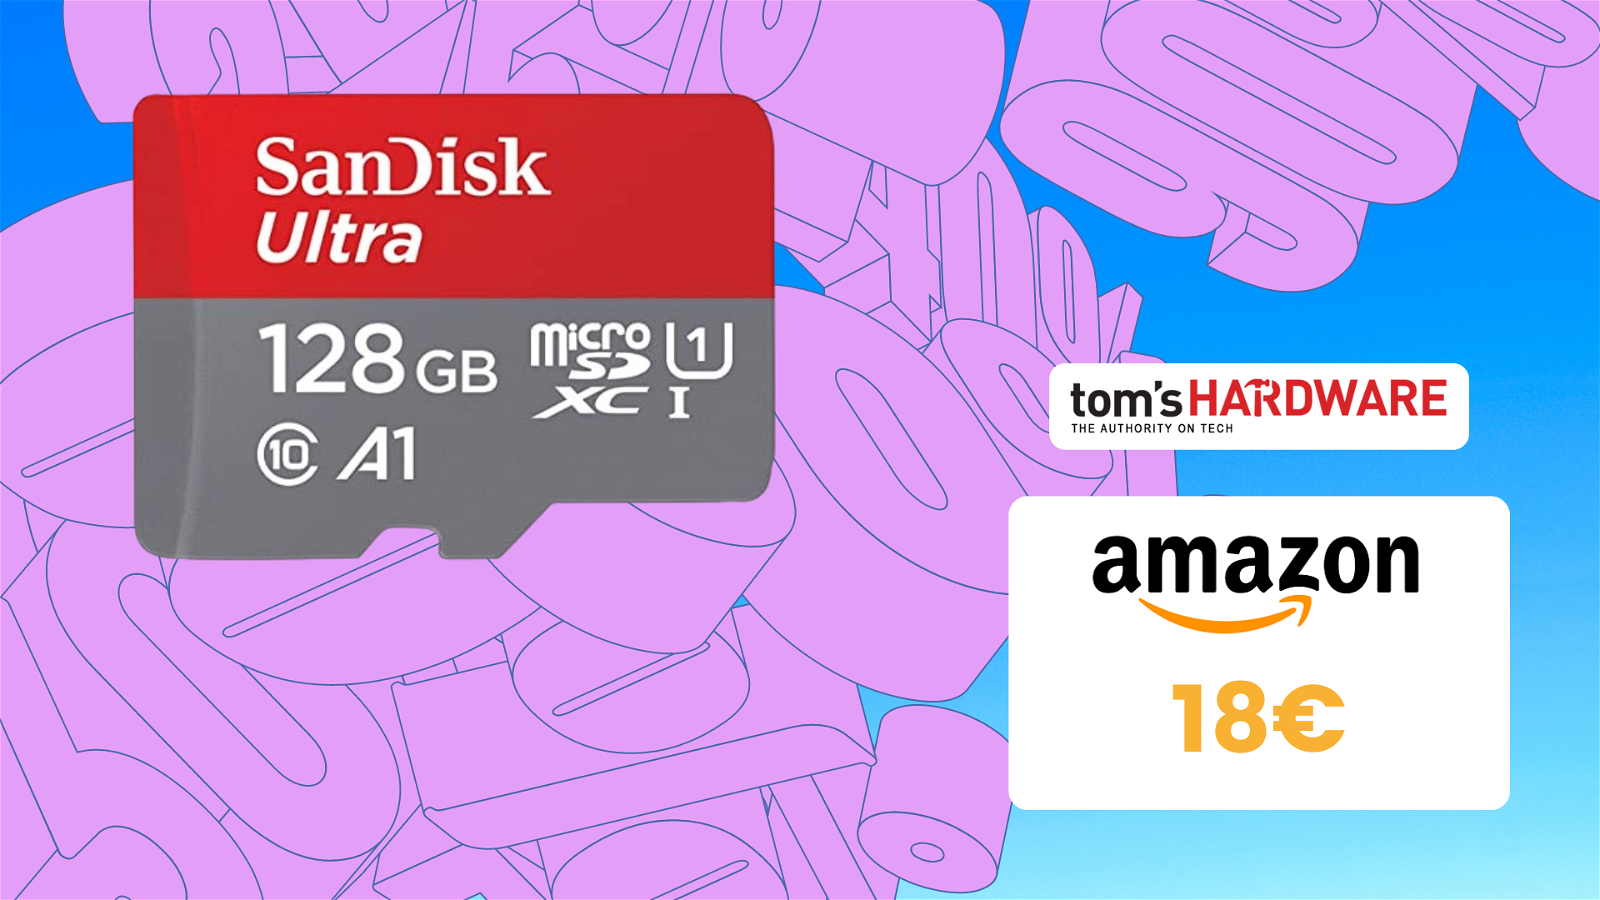 Immagine di Costa e poco e funziona bene, MicroSD Sandisk Ultra 128GB a solo 18€!